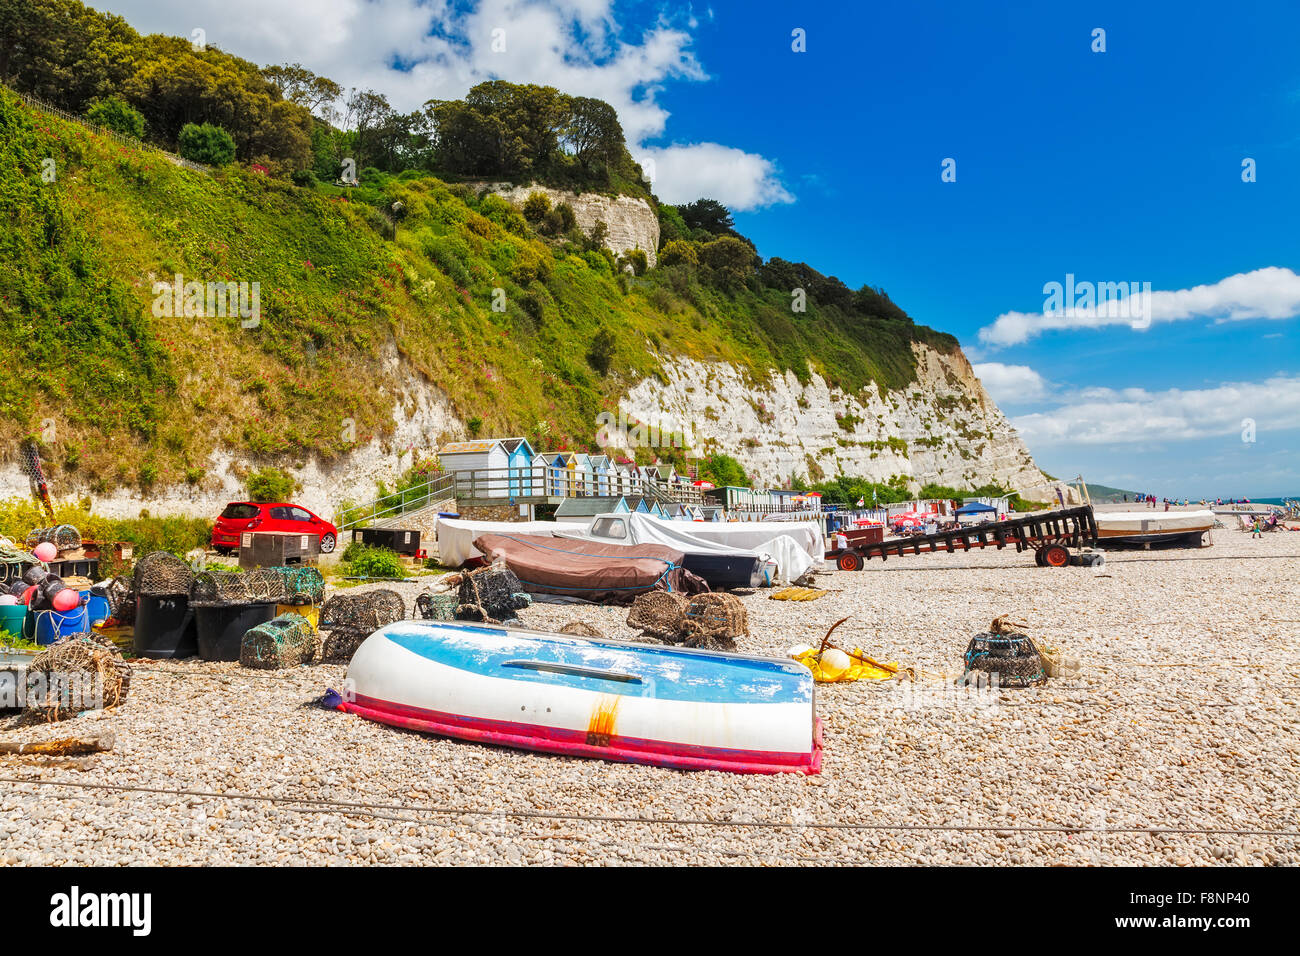 Bateaux sur la plage à la bière, la baie de Lyme Devon, Angleterre Angleterre Europe Banque D'Images